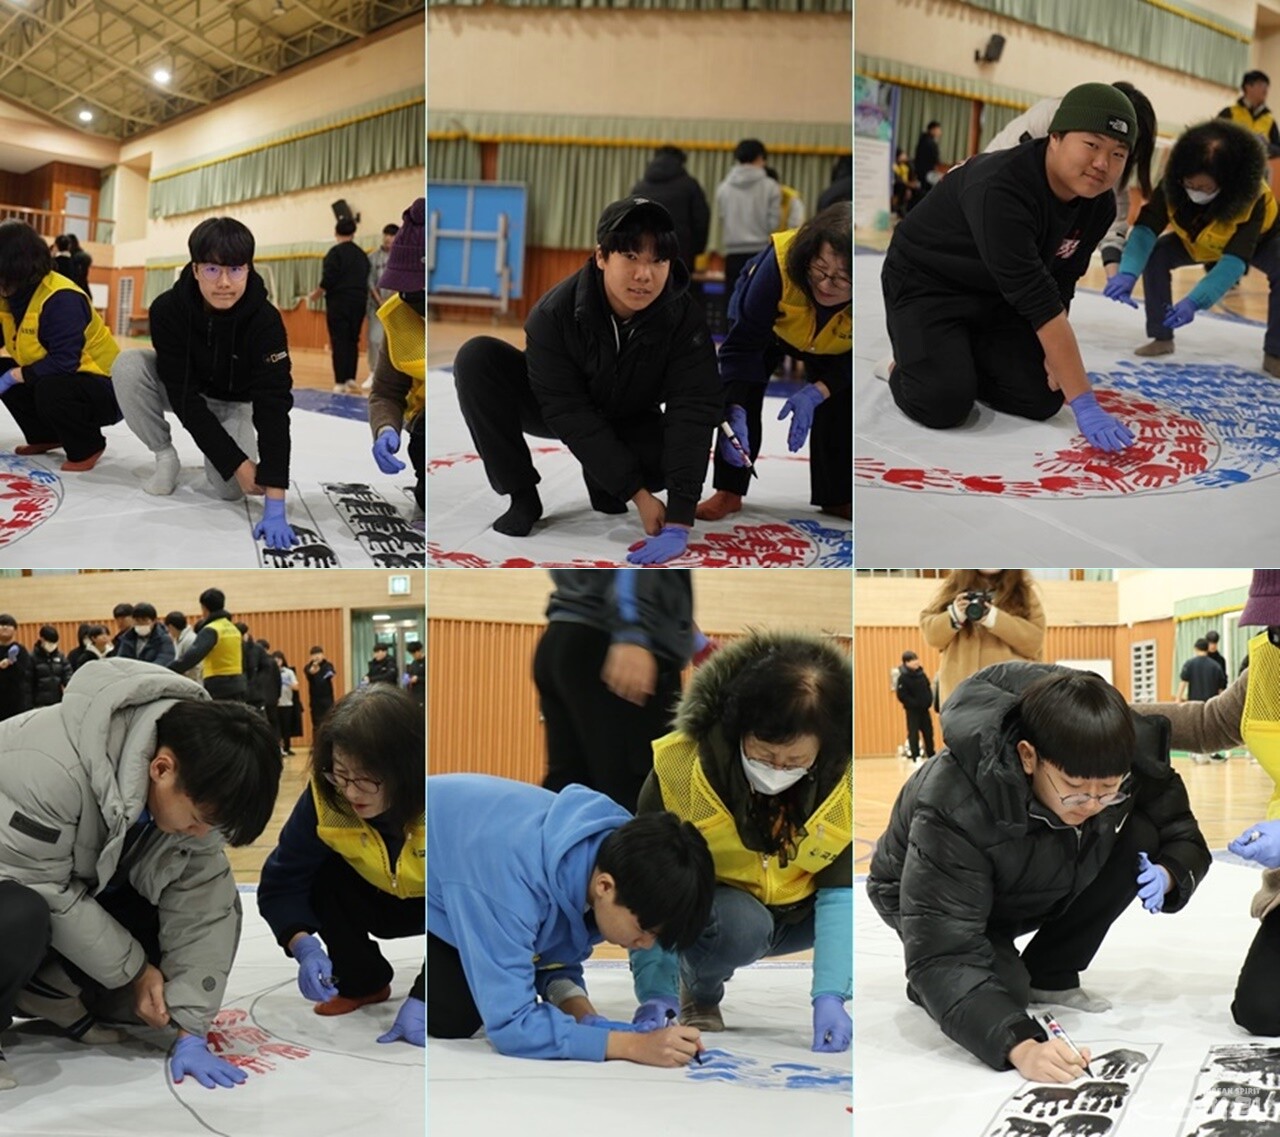 천안중학교 전교생이 참여해 태극과 건곤감리 문양을 손도장으로 완성했다. 사진 강나리, 하미진 기자.